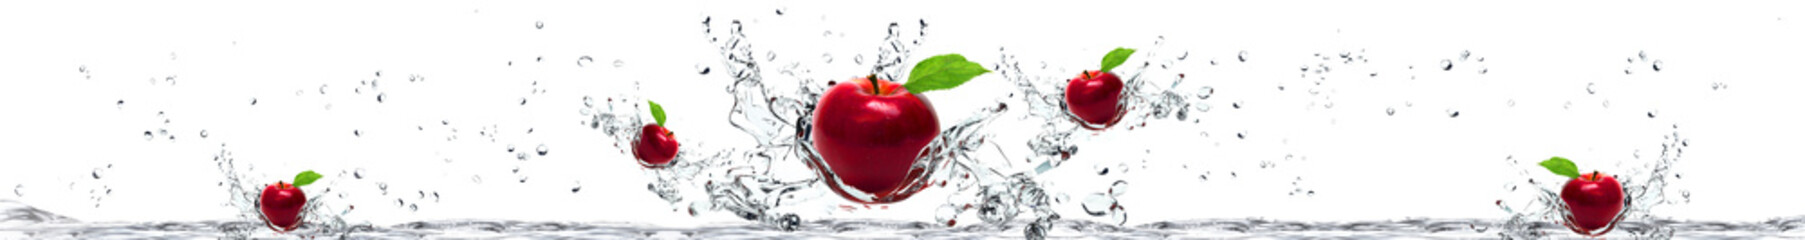 jabłka w wodzie